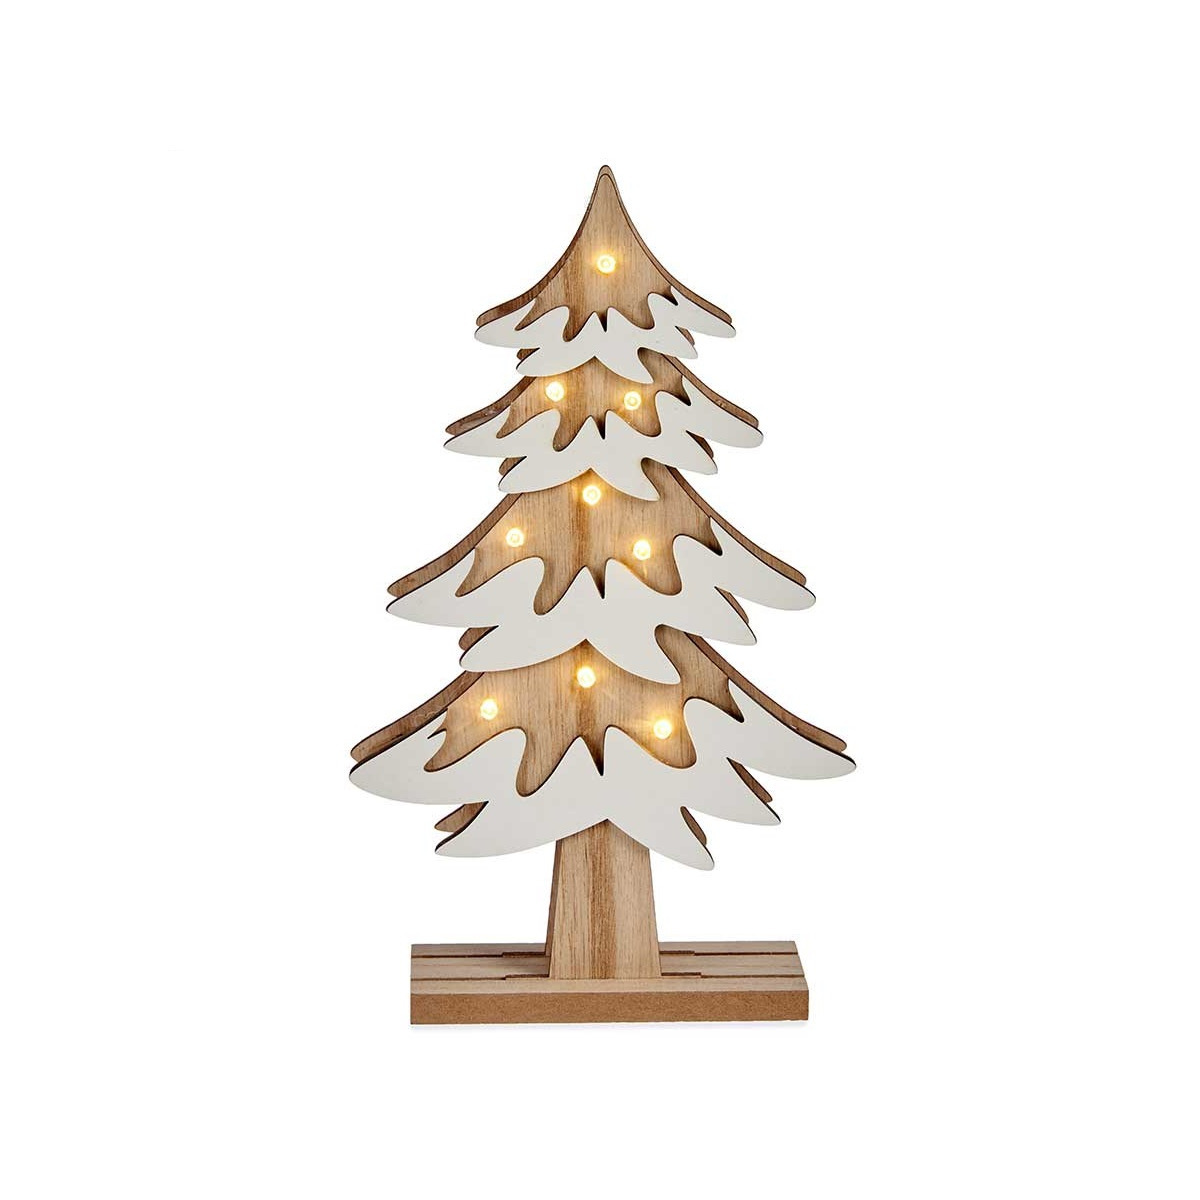 Krist+ decoratie kerstboom hout 25 cm met LED verlichting